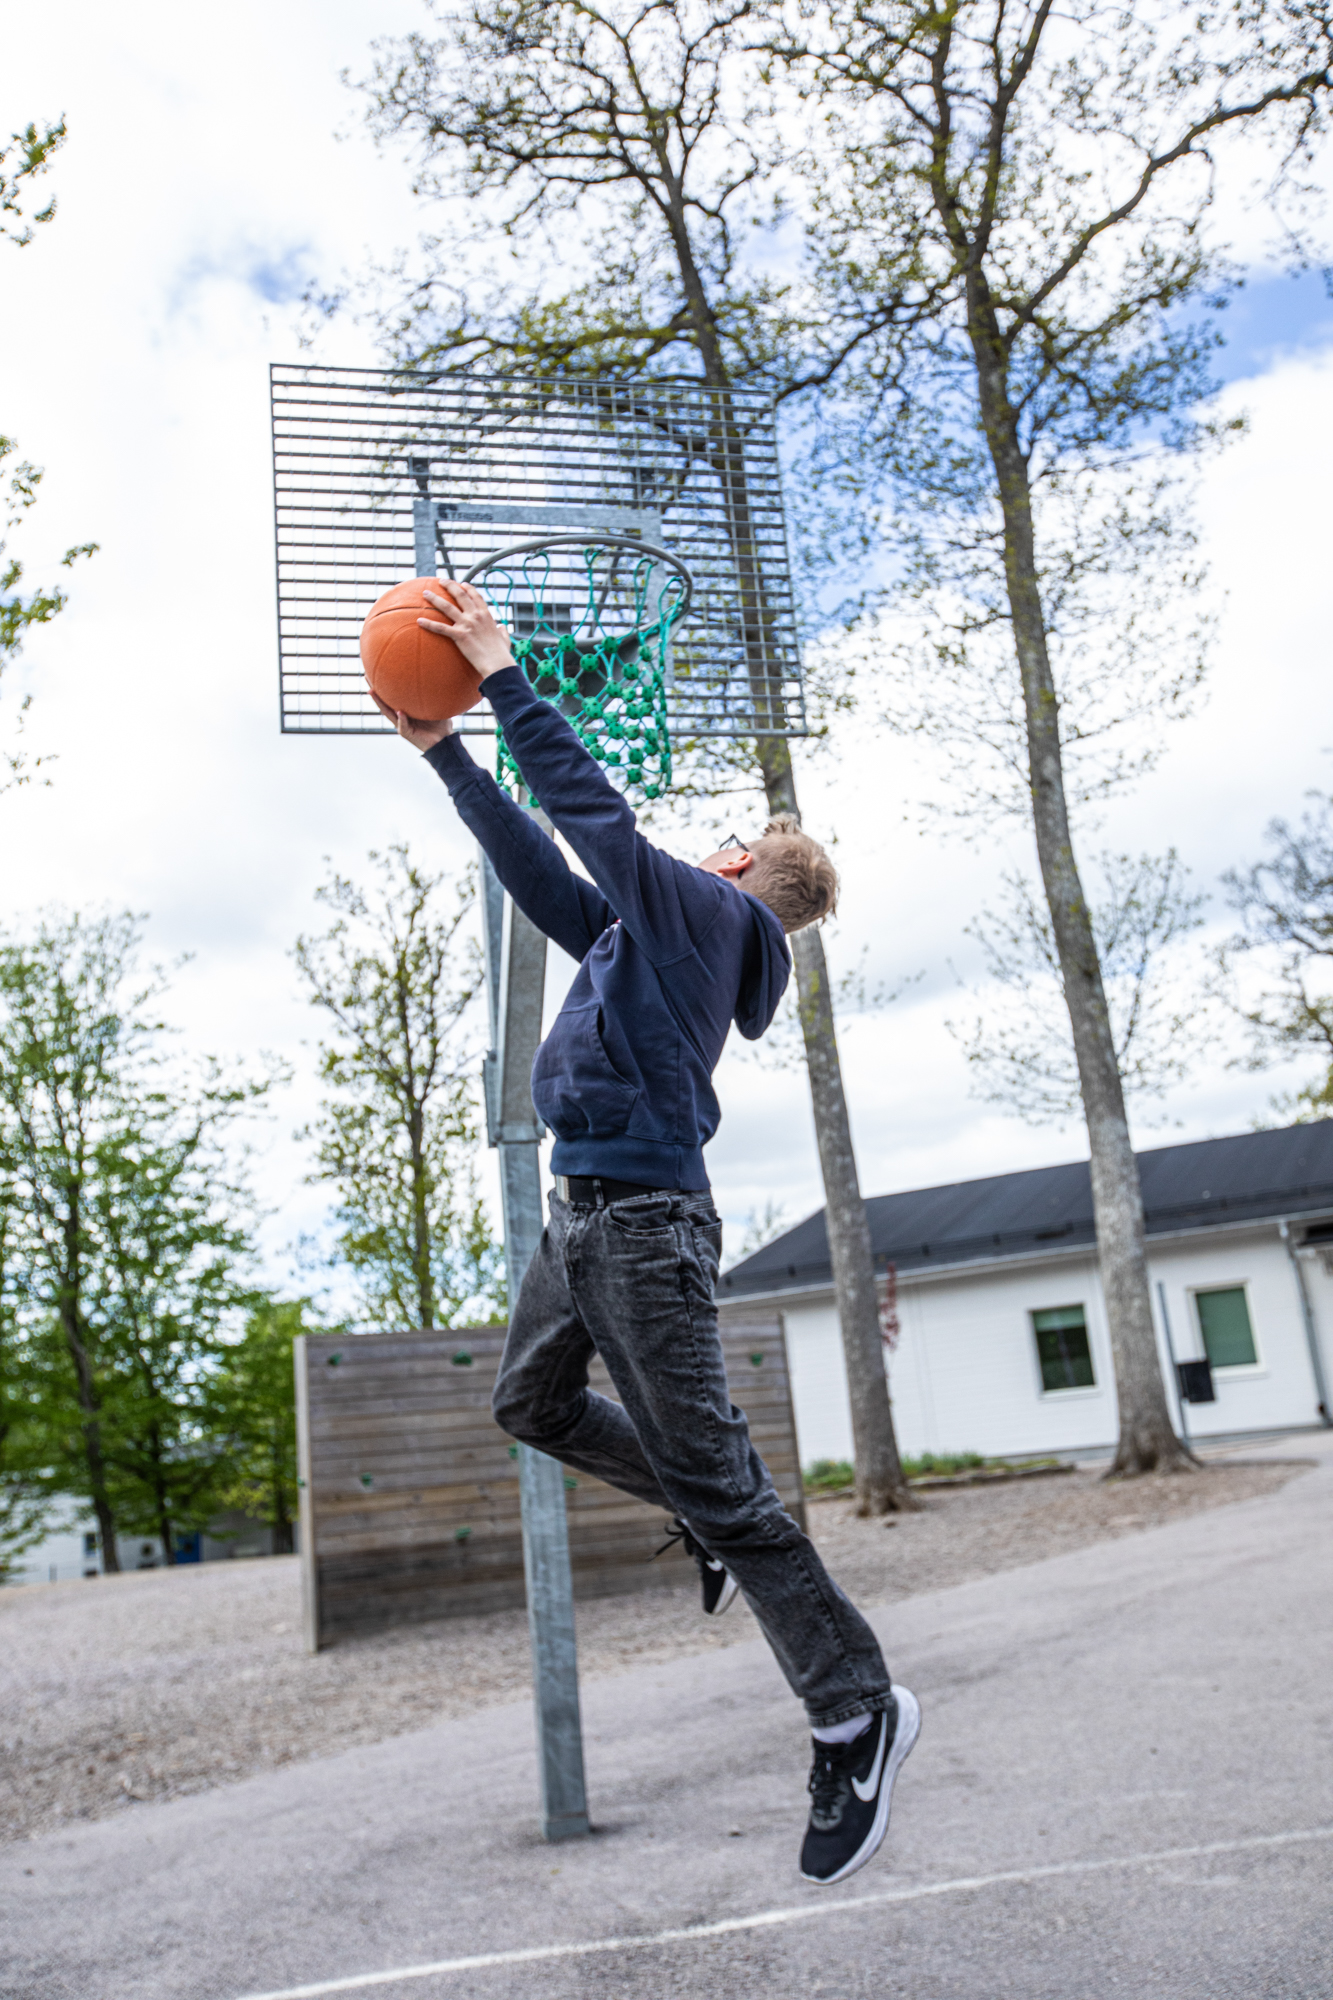 Mellanstadieelev spelar basket på skolgård